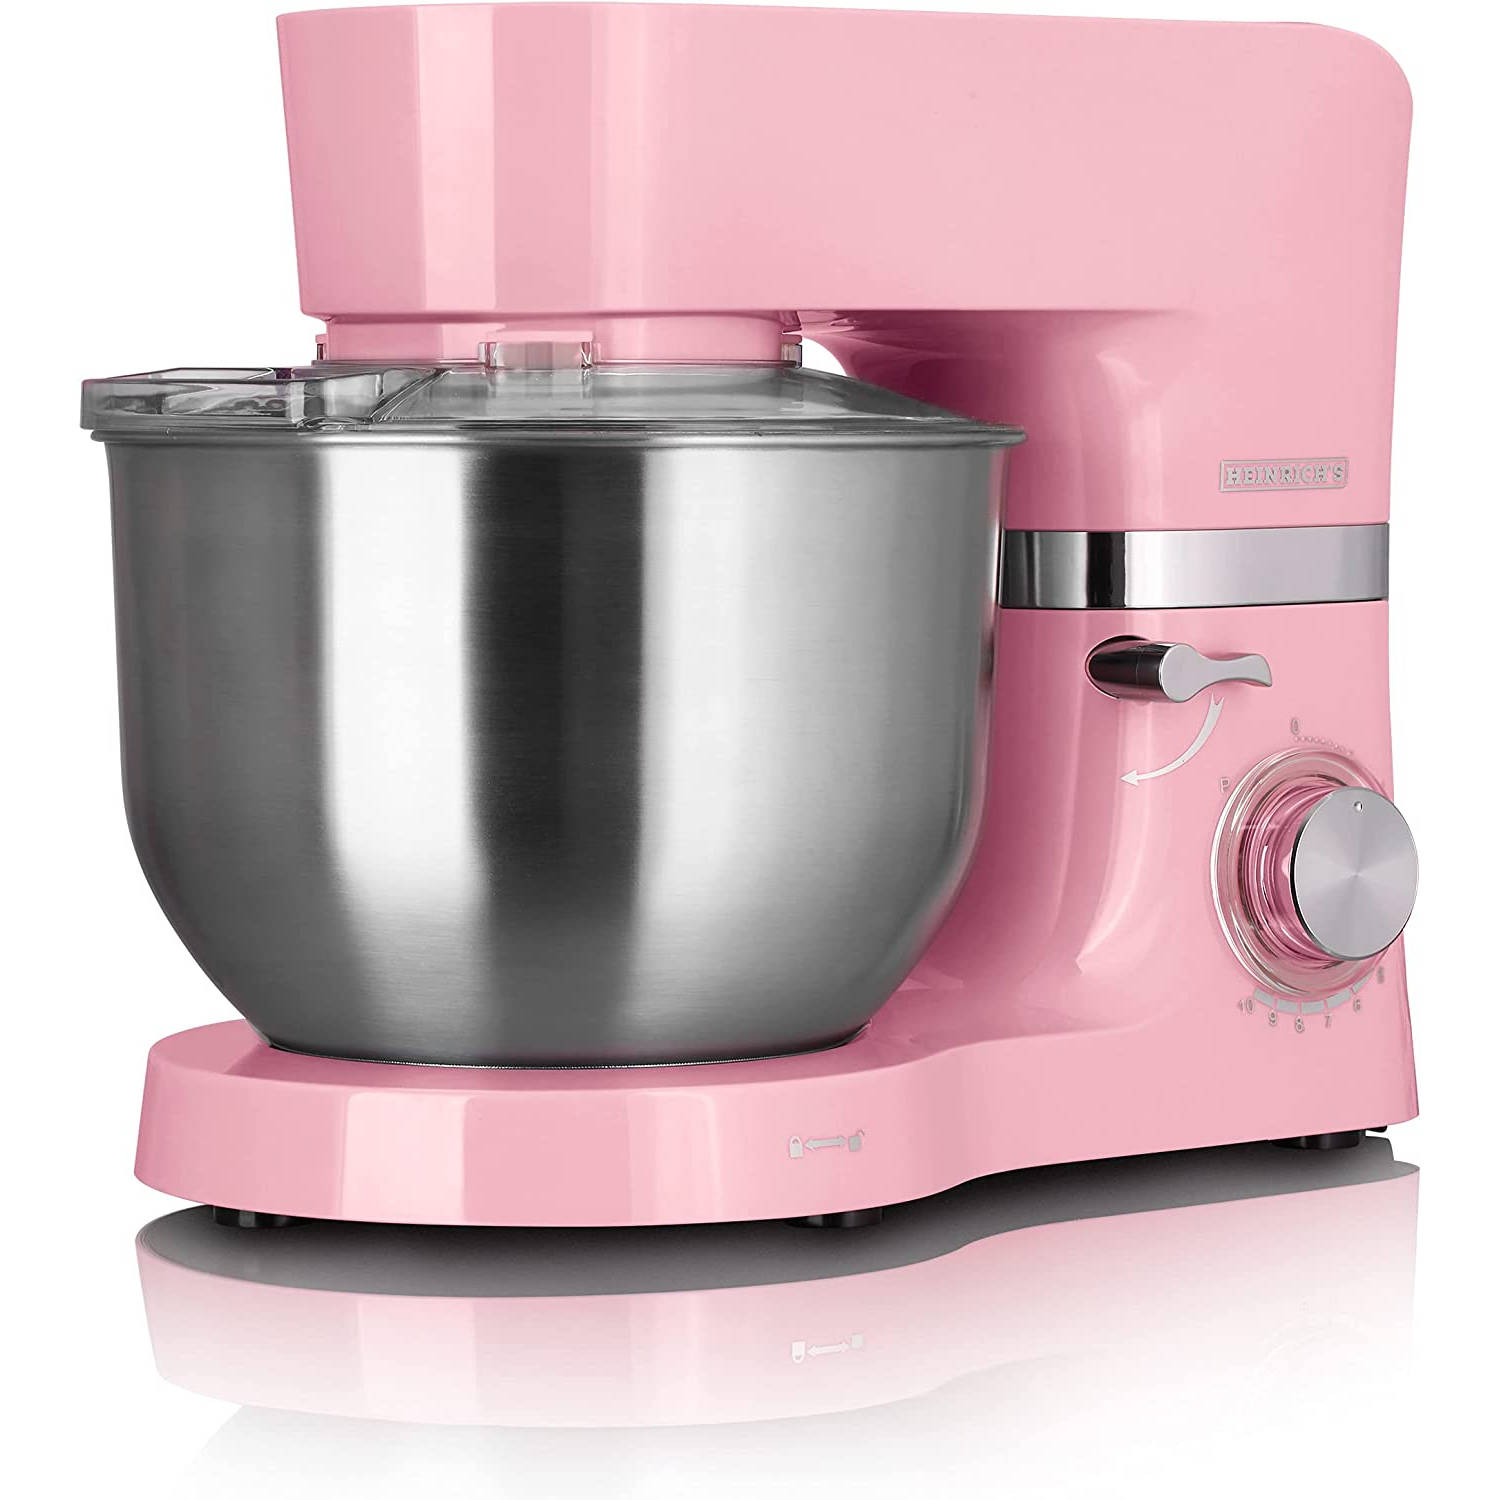 Heinrich´s HKM 6278 - keukenmachine - 1300 Watt - XL - roze.